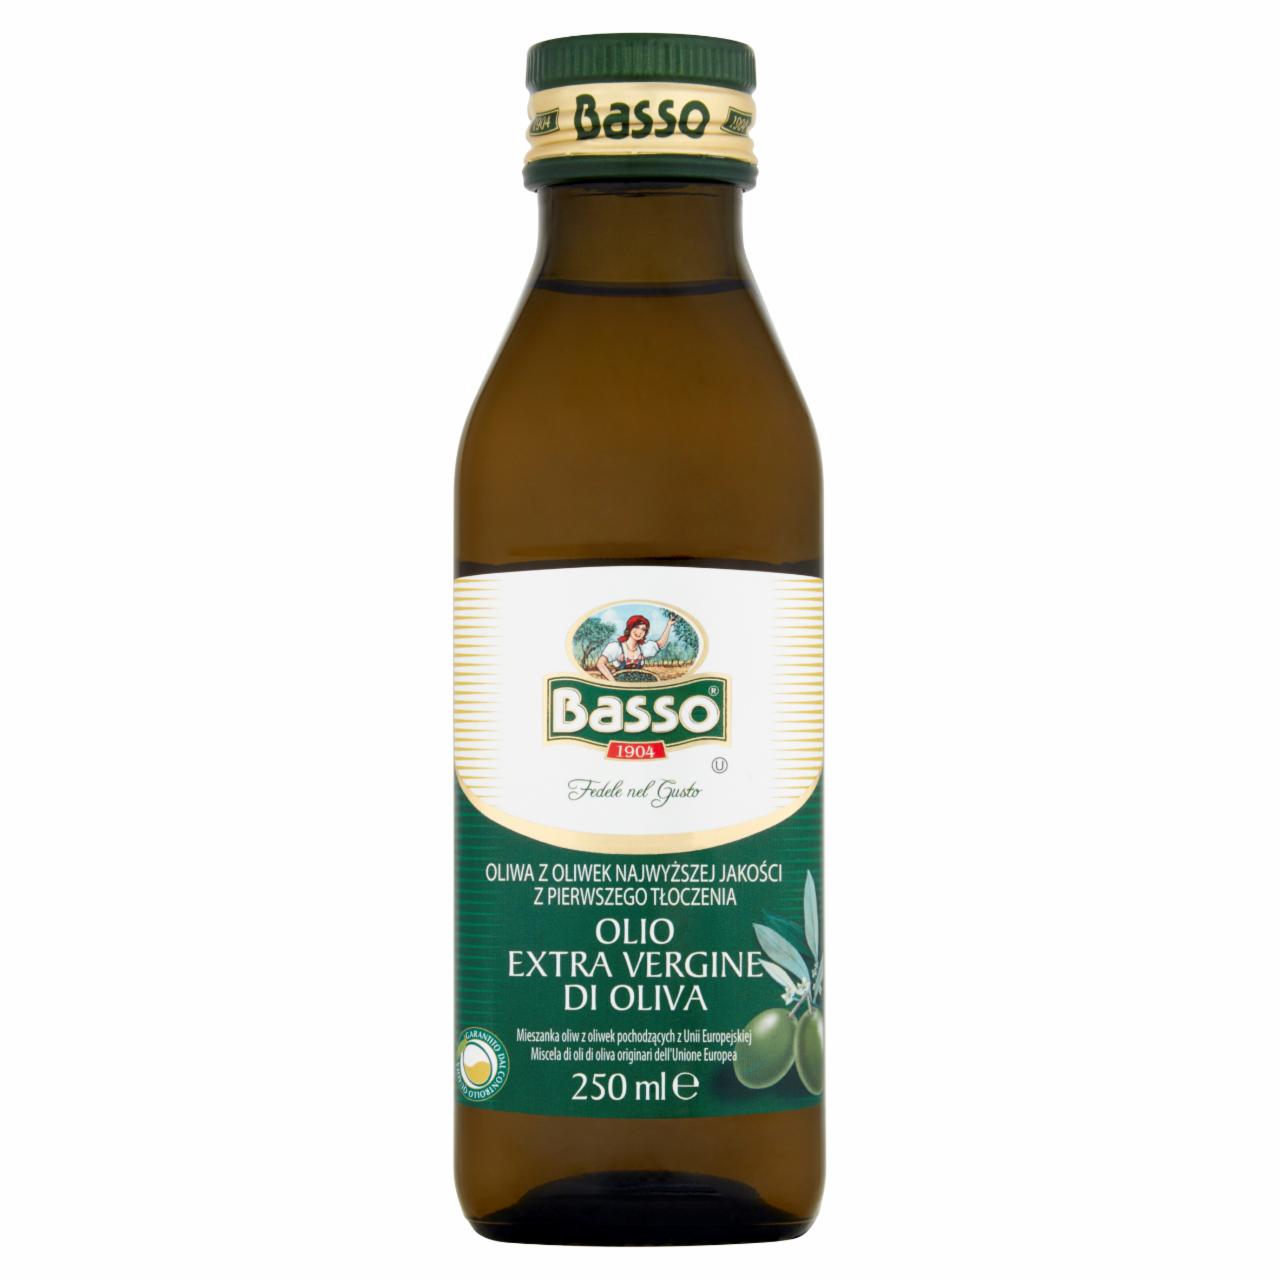 Zdjęcia - Basso Oliwa z oliwek najwyższej jakości z pierwszego tłoczenia 250 ml